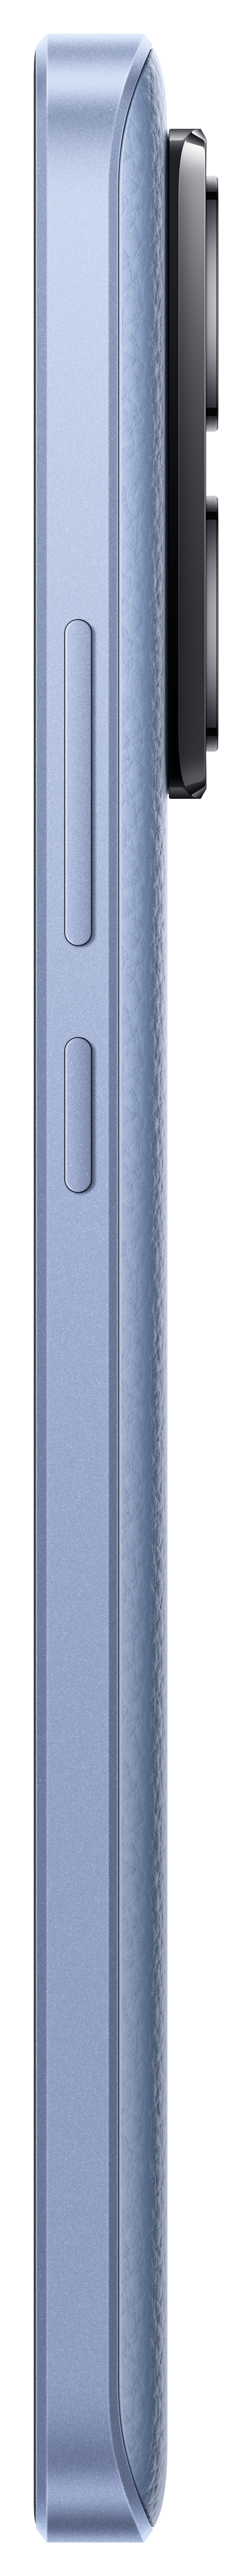 SIM 13T GB Pro XIAOMI 512 Dual Alpine Blue